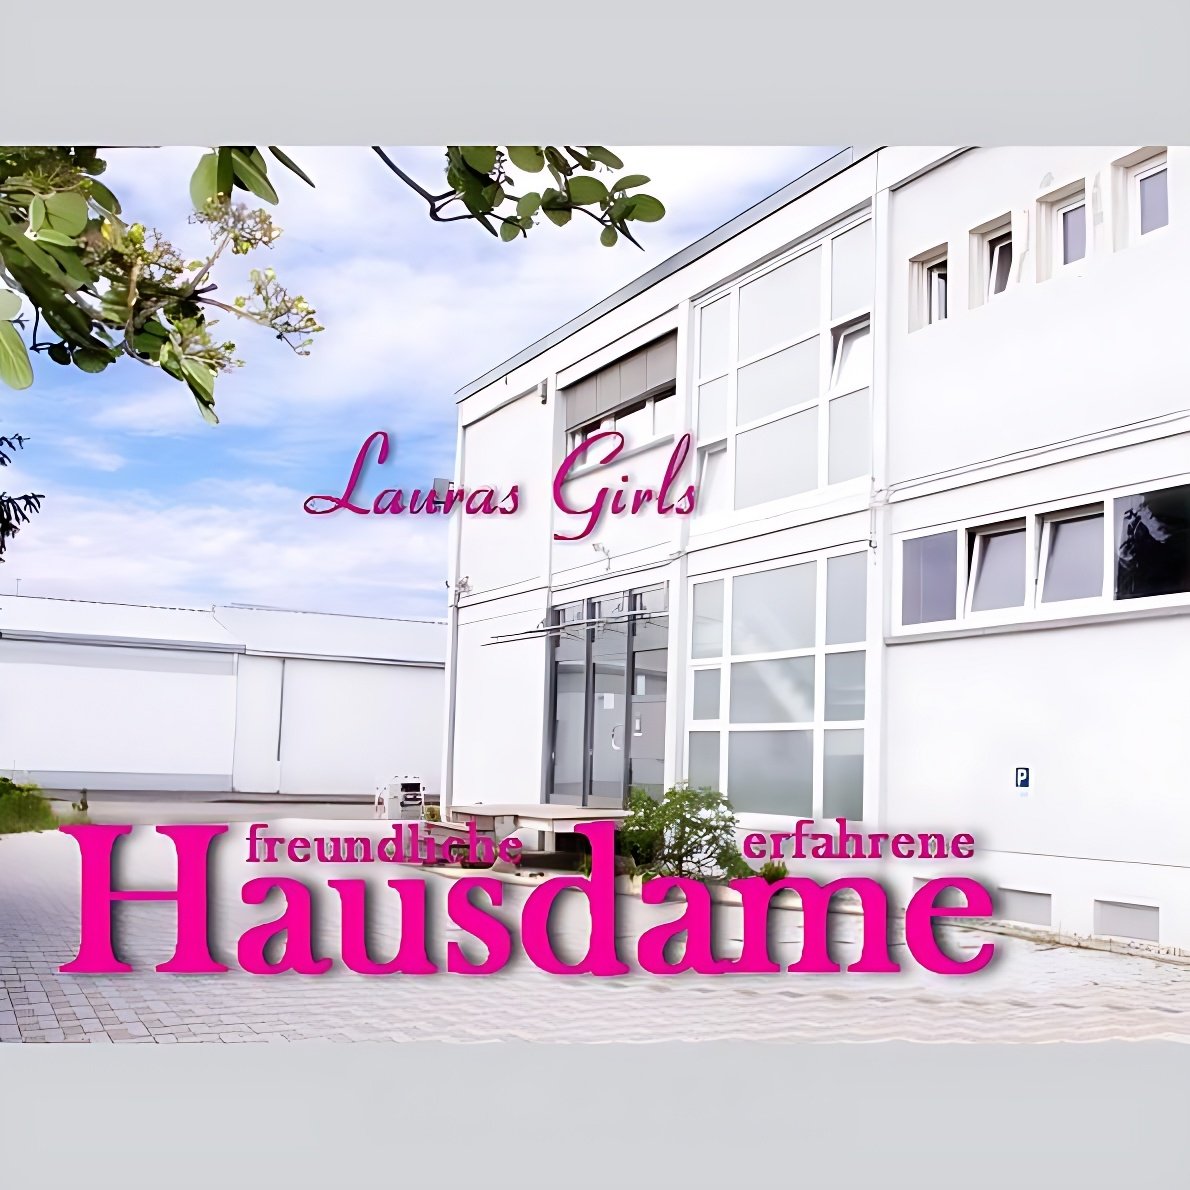 Establecimientos en Karlsruhe - place “Lauras Girls“ in Karlsruhe